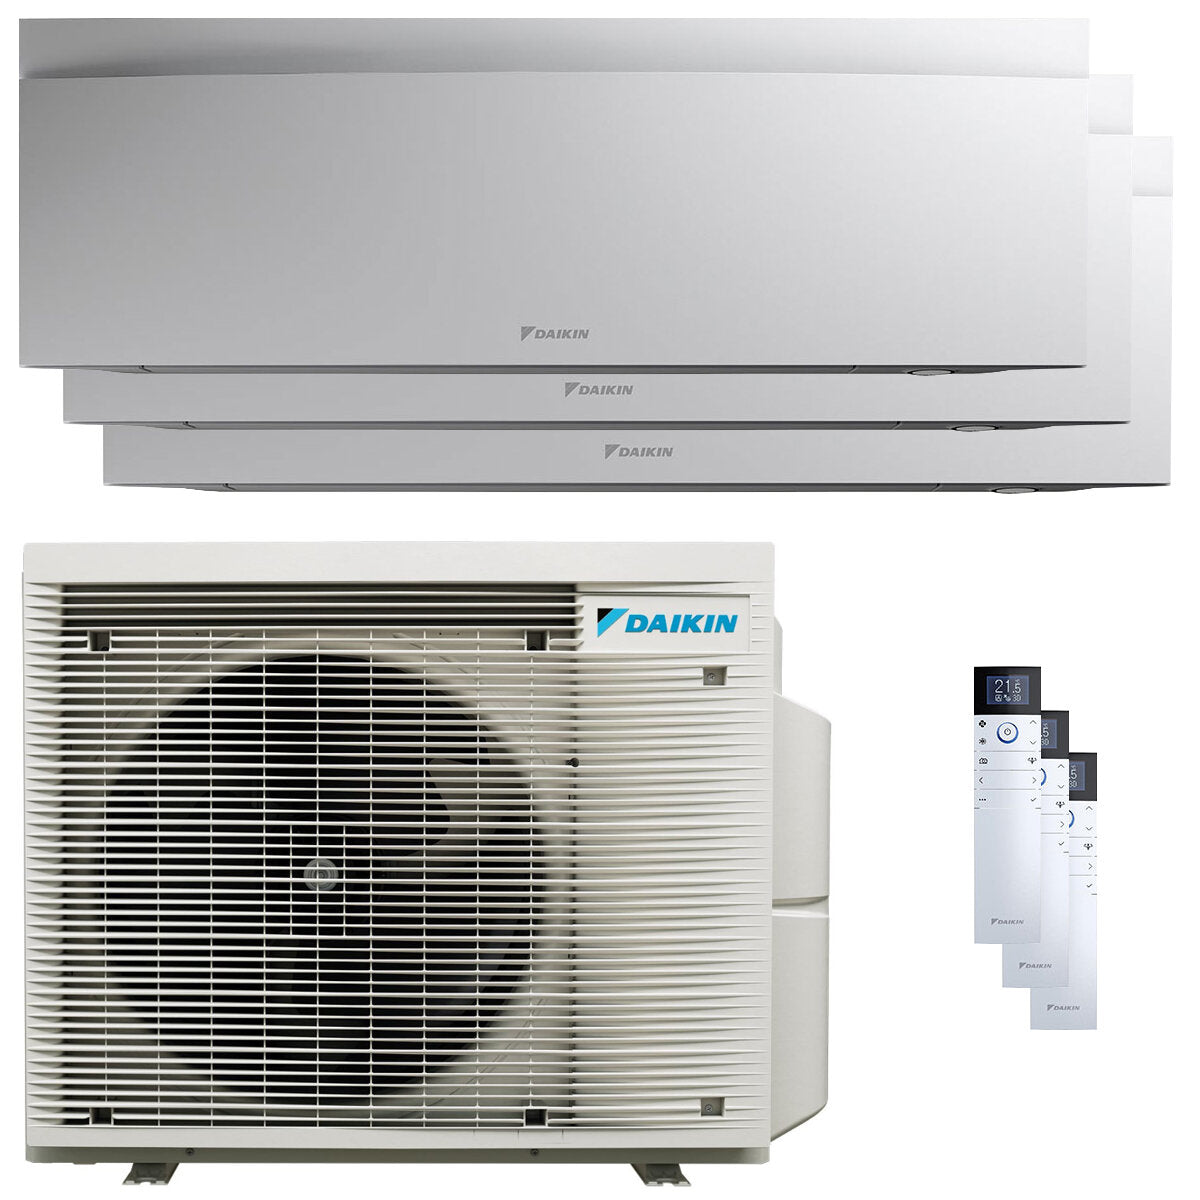 Daikin Emura 3 trial split air conditioner 9000+12000+12000 BTU inverter A+ wifi outdoor unit 6.8 kW White